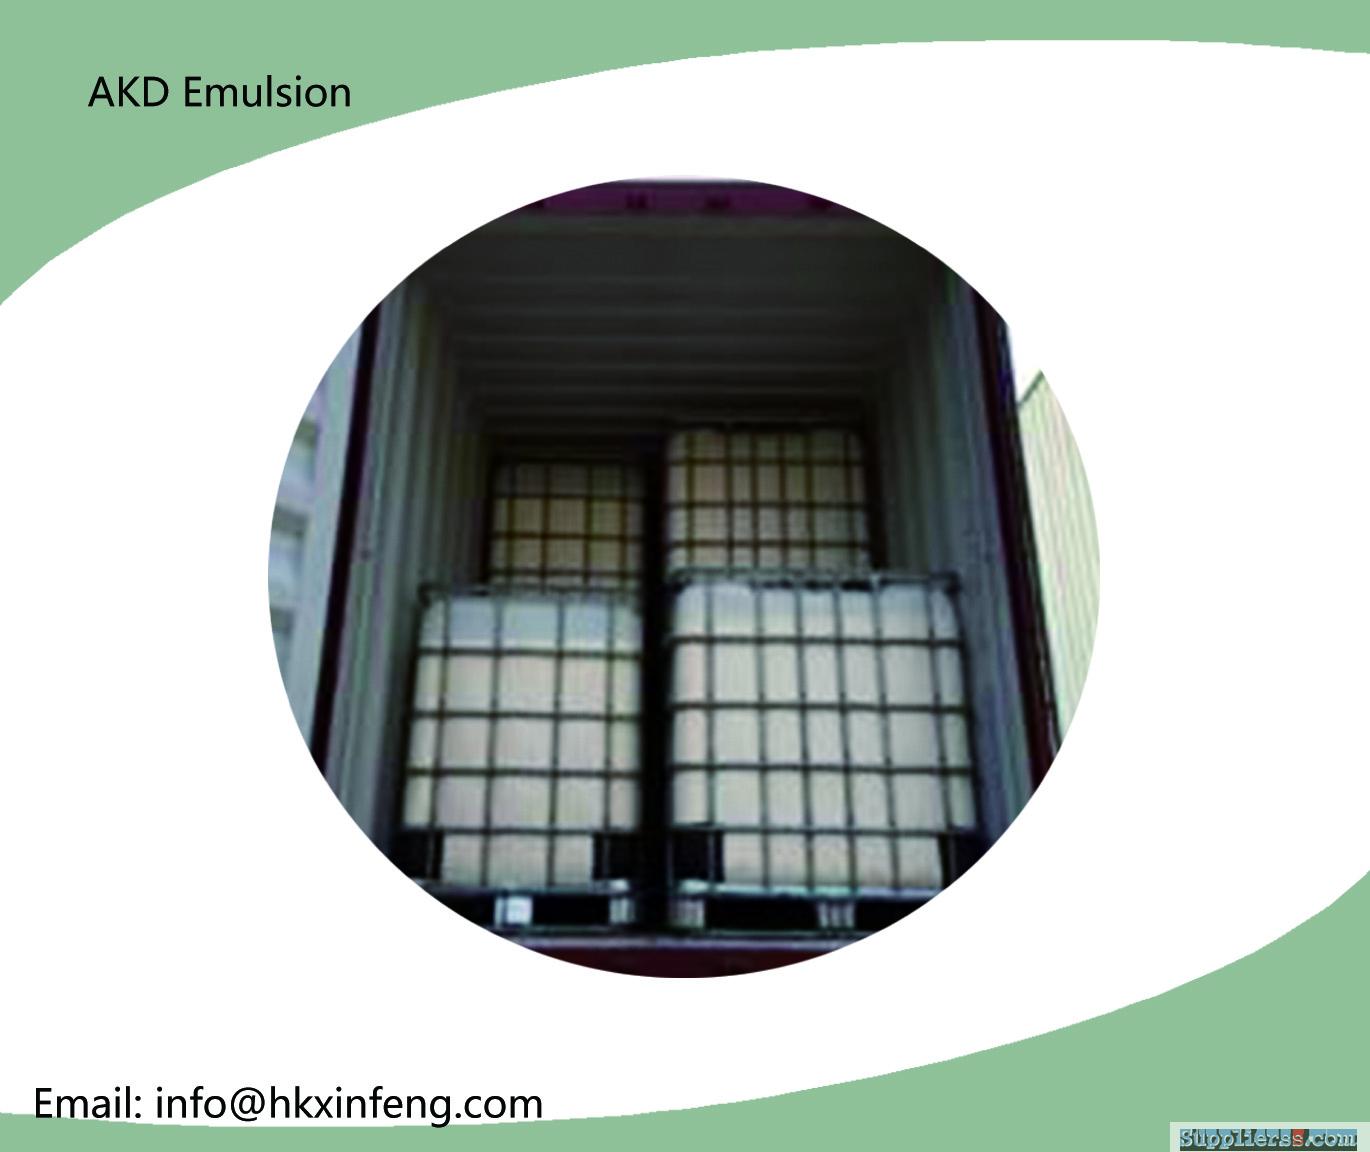 AKD Emulsion